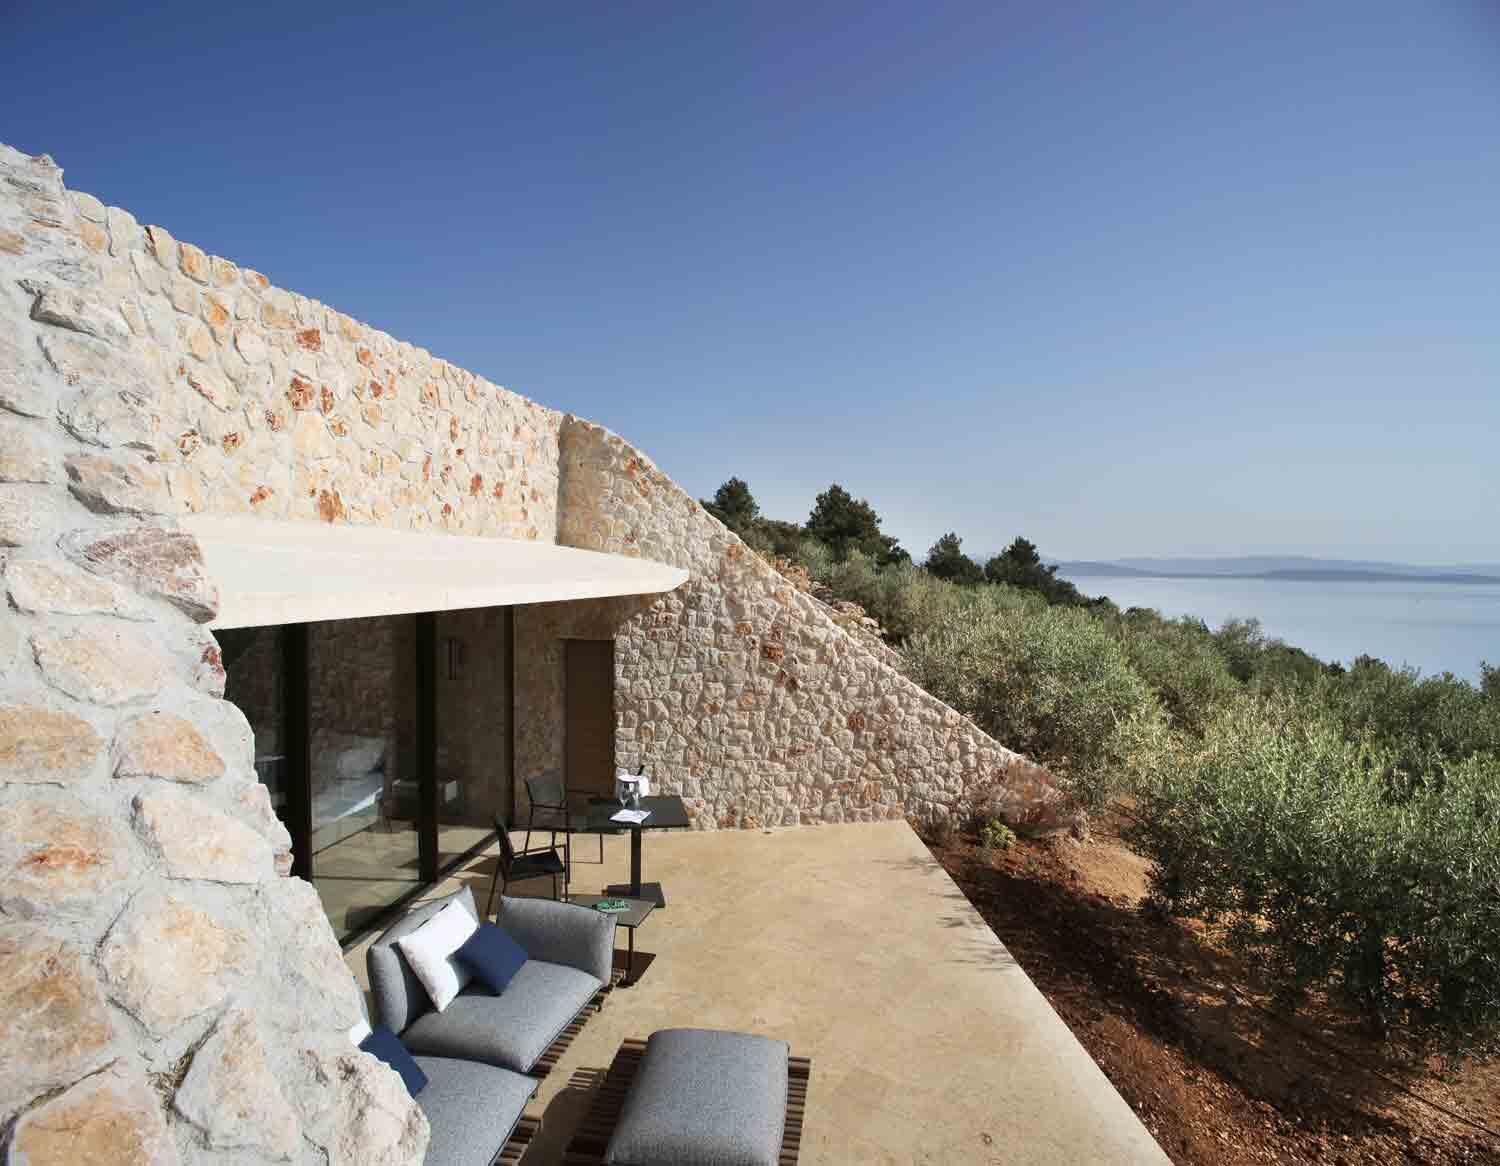 Blick auf die Terrasse der Villa Nai 3.3 mit Aussicht auf das Meer und Olivenhainen